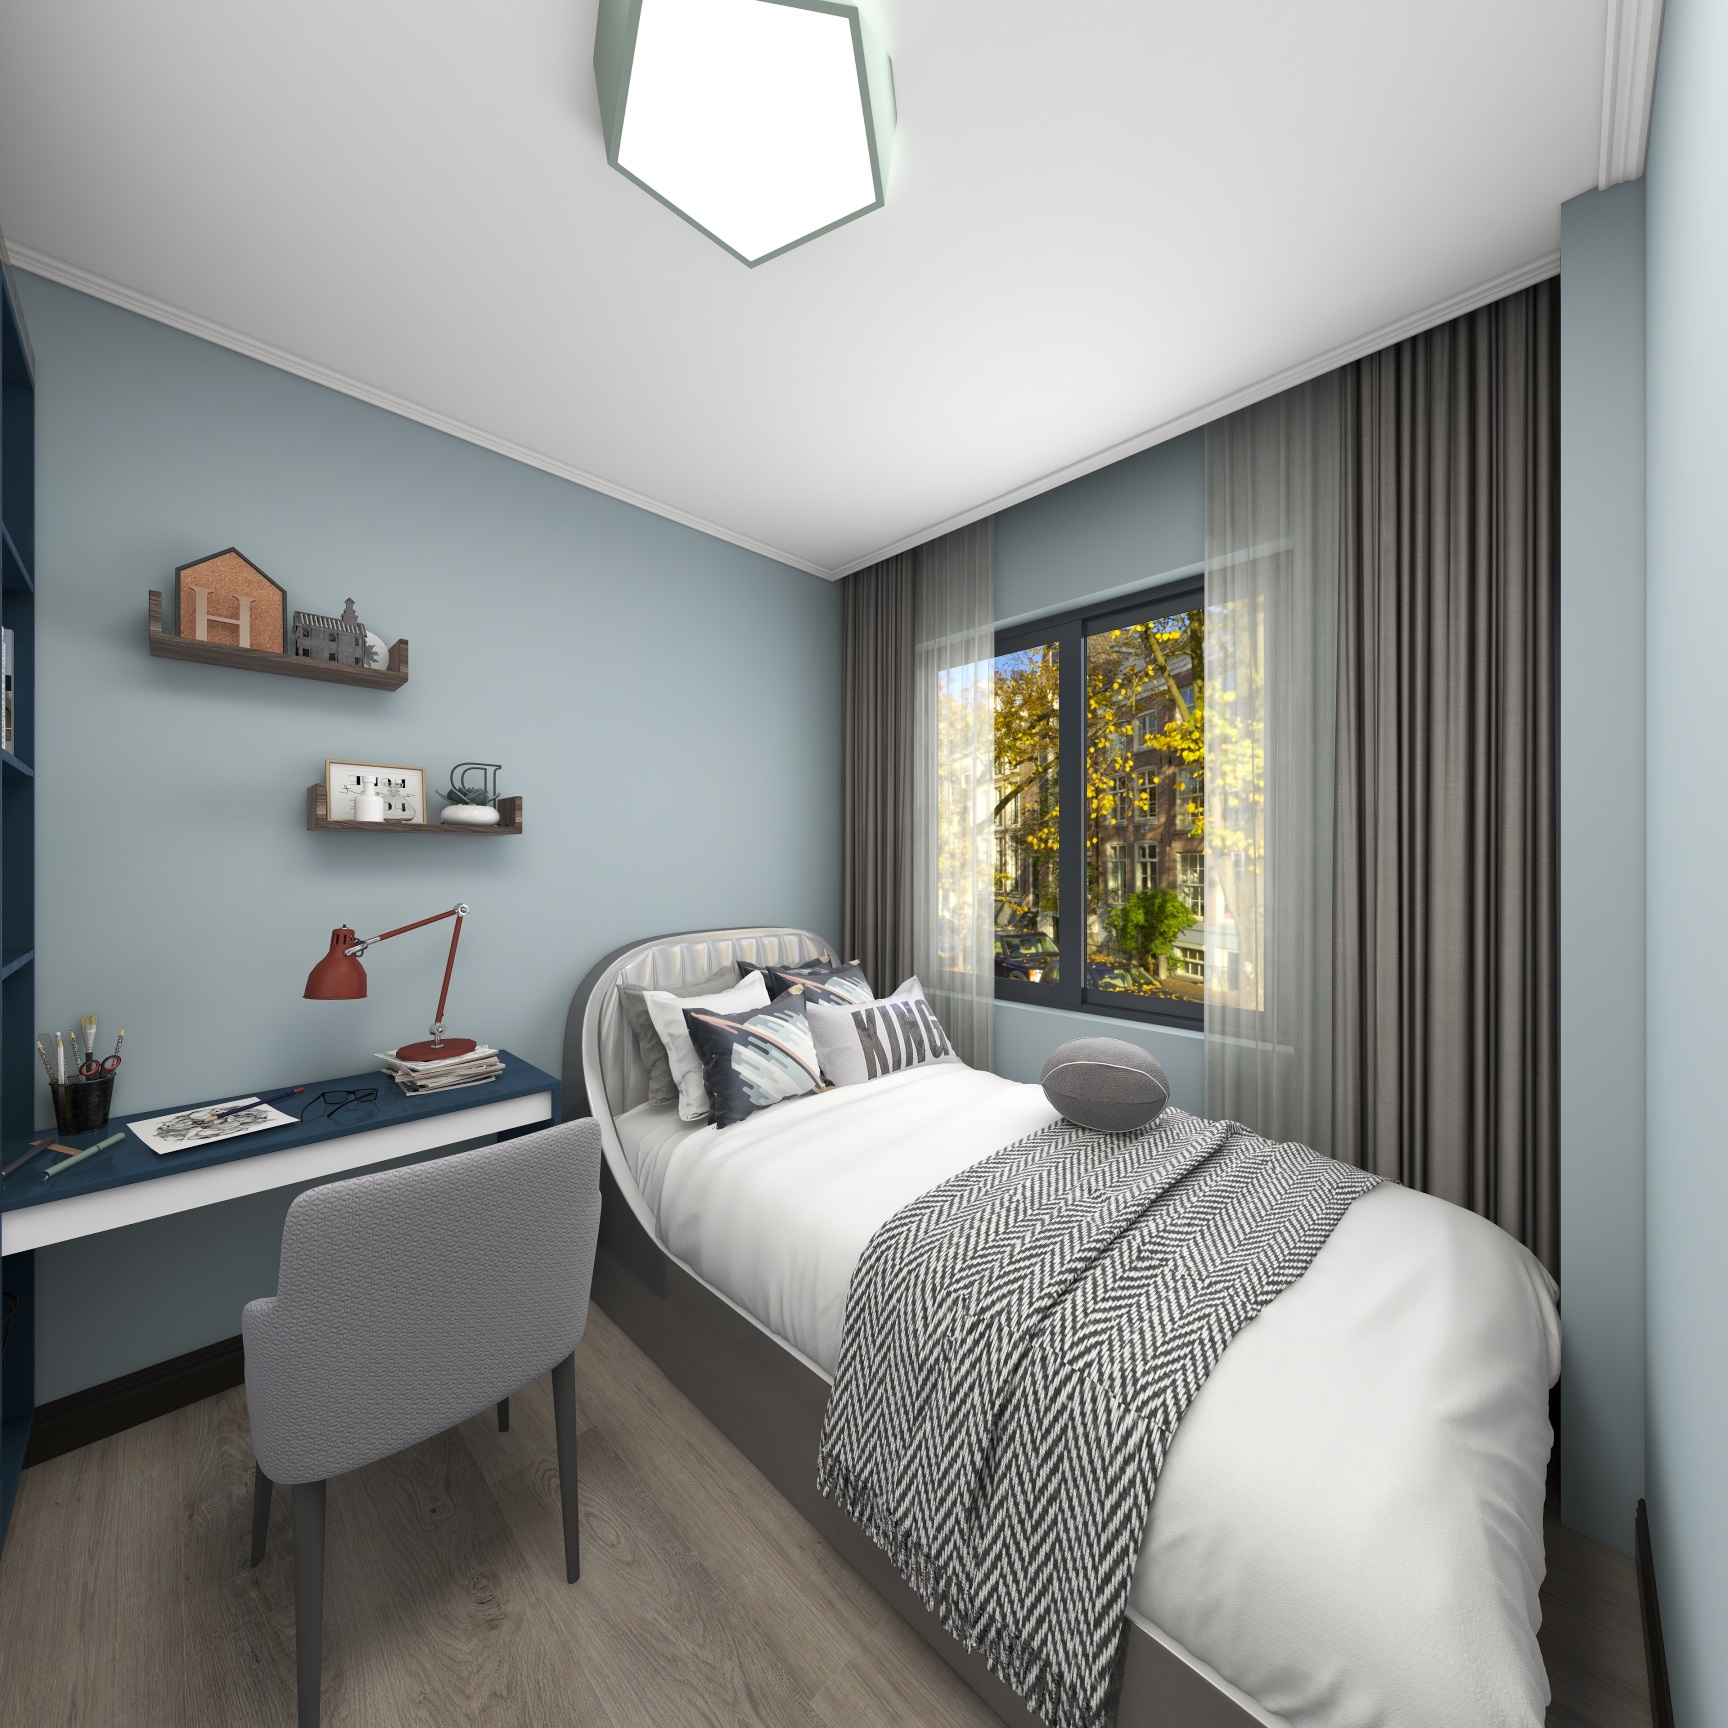 浅蓝色背景墙塑造安静的睡眠环境，白色和灰色的贯穿搭配，使卧室空间更加宁静。